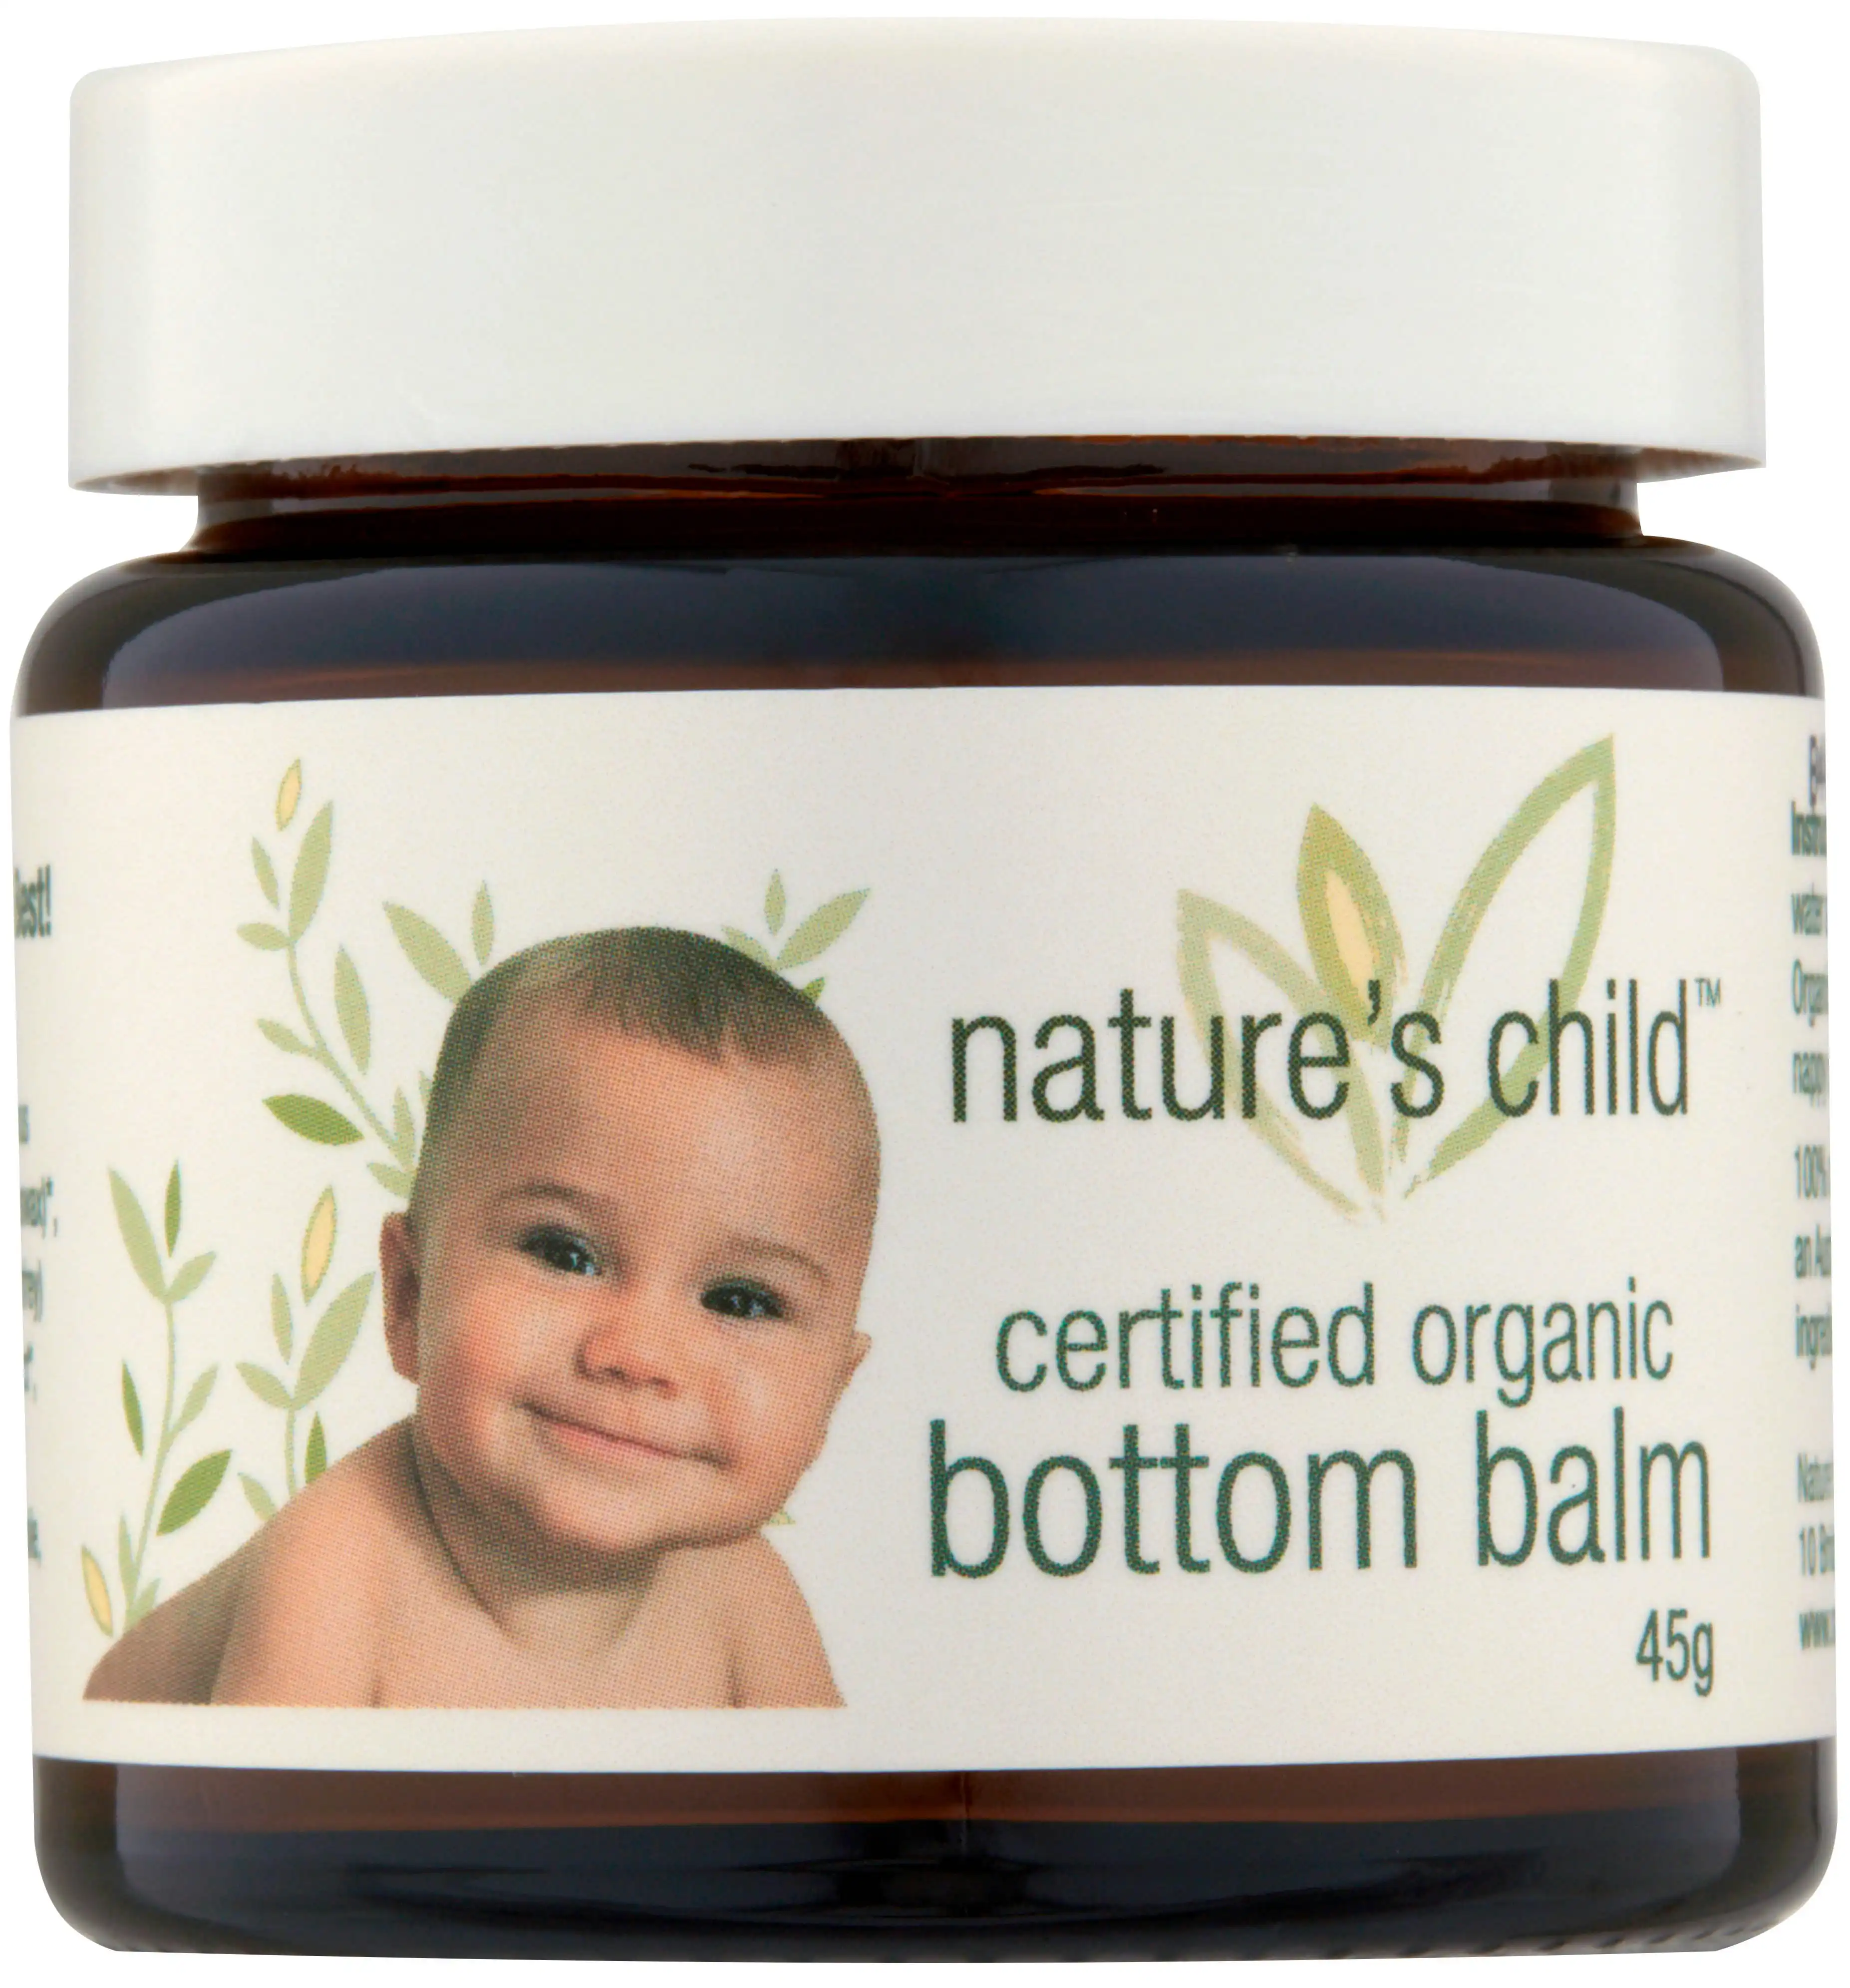 Nature's Child Bottom Balm Organic 45g